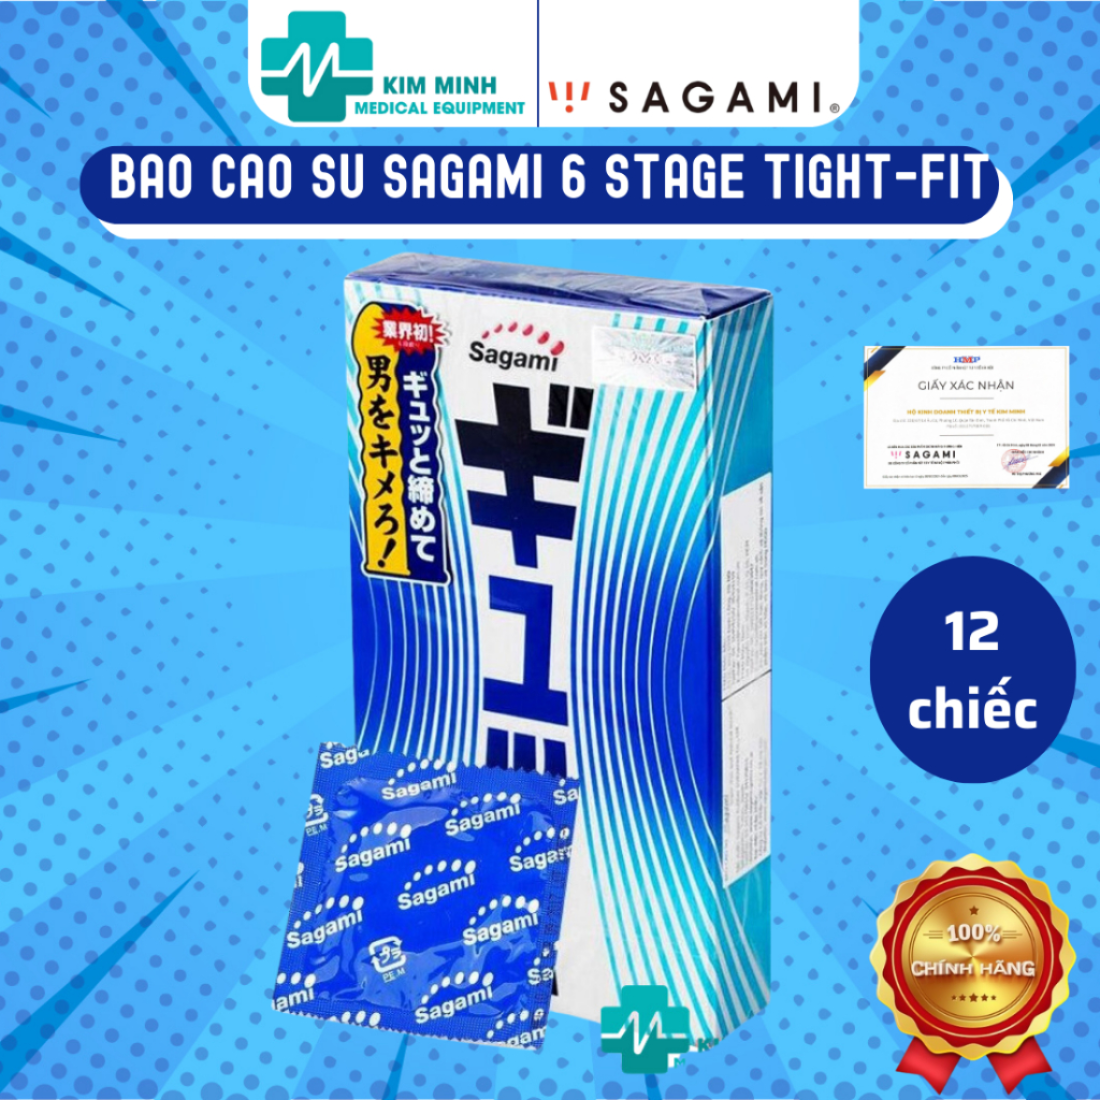 Hình ảnh Bao Cao Su Sagami 6 Stage Tight-Fit, siêu mỏng, ôm khít, có 6 đường gân sóng tăng kích thích